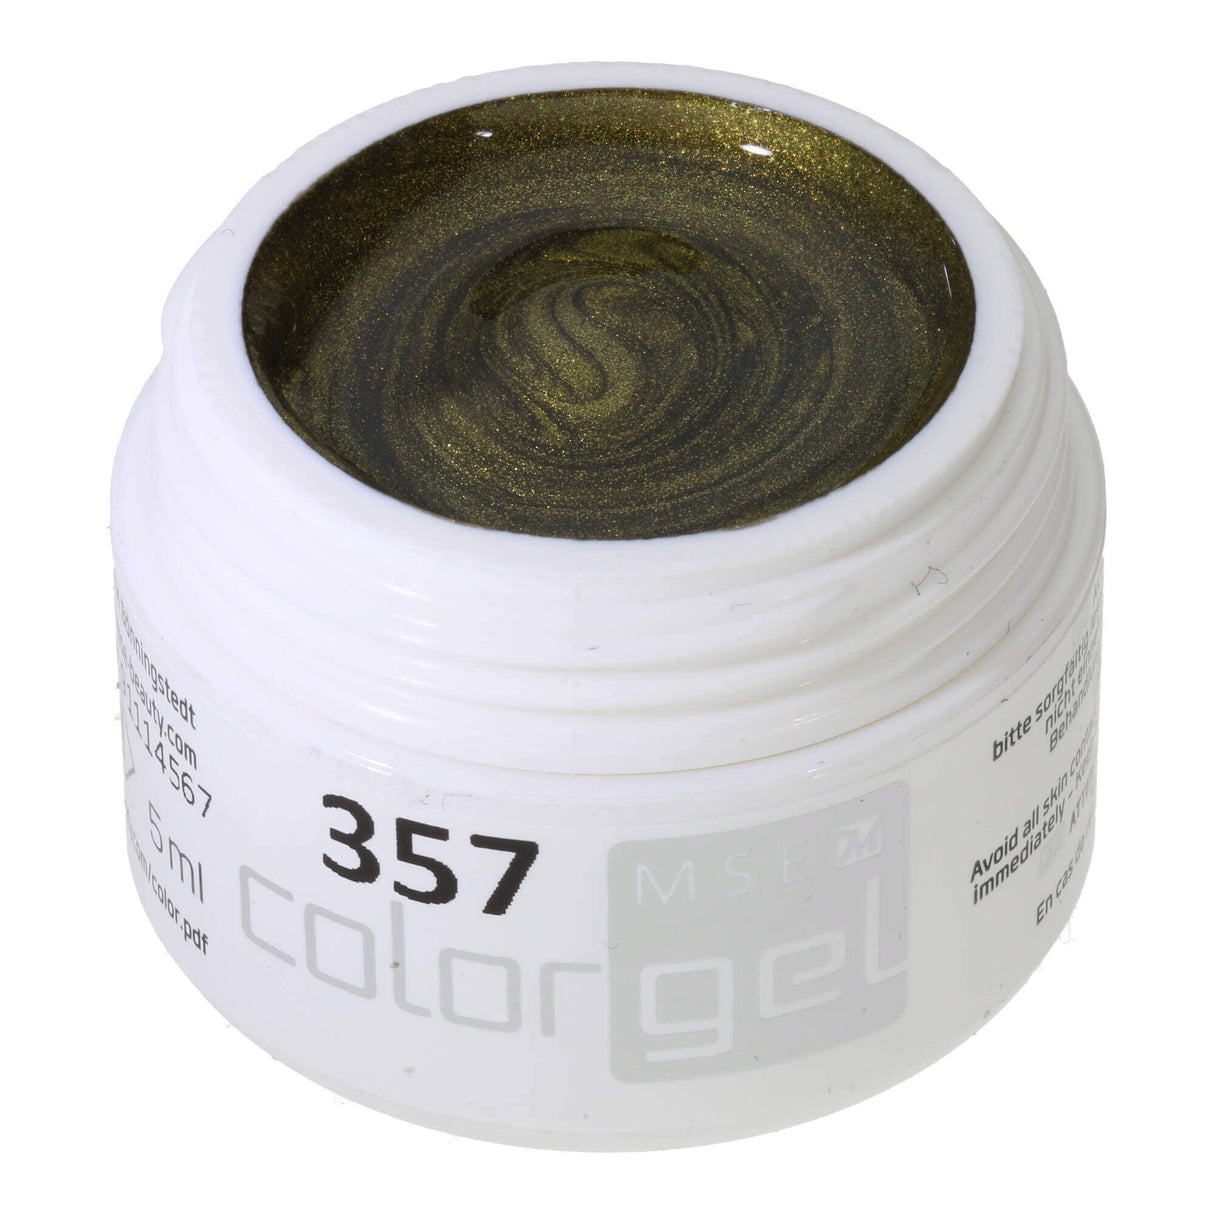 # 357 Premium-EFFEKT Color Gel 5ml olive green with golden pearlescent luster